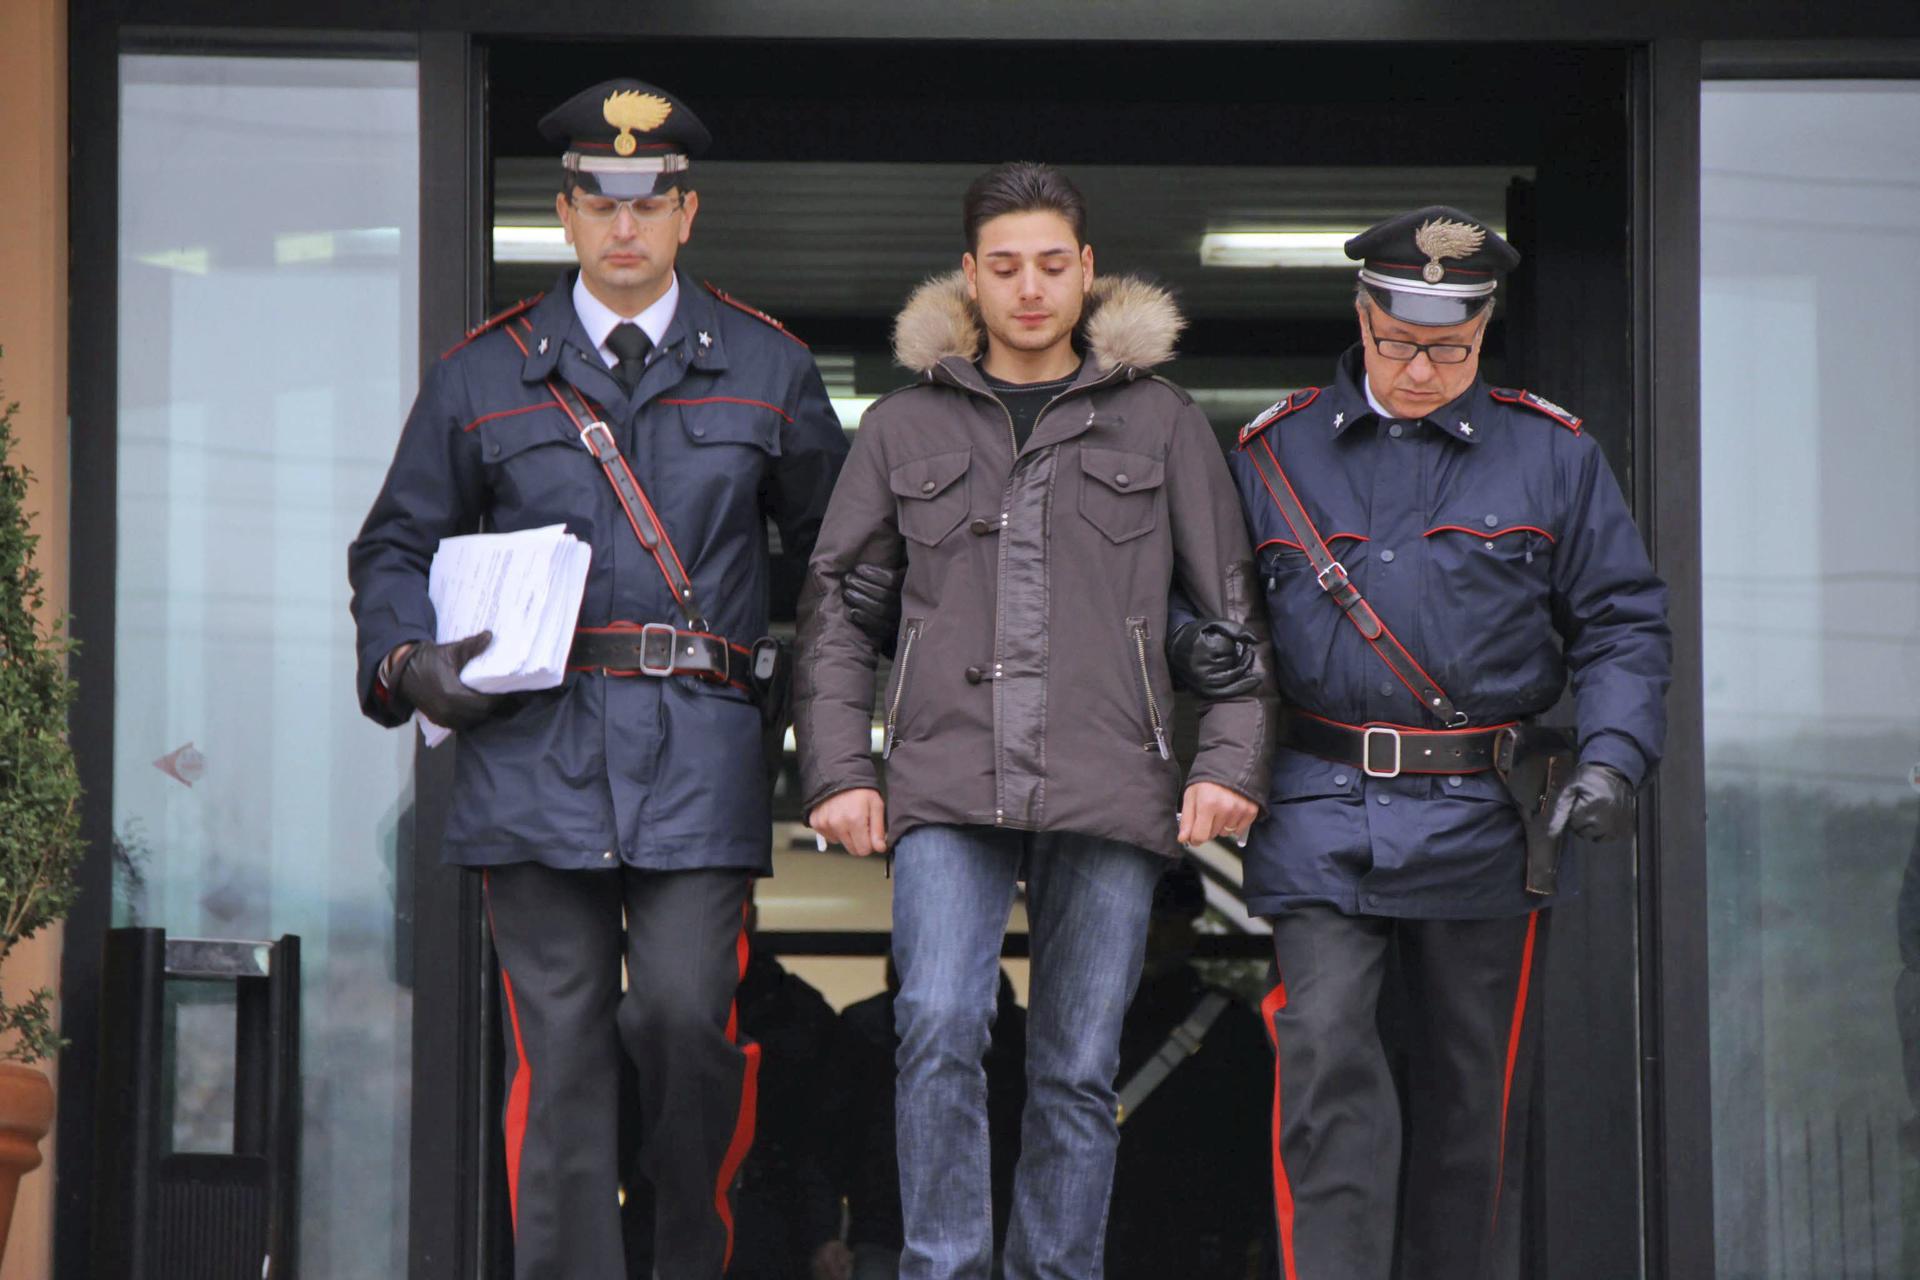 El supuesto jefe de la mafia calabresa 'Ndrangheta, Andrea Bruni (c), sale escoltado de la comisaría de Cosenza, Italia, el 15 de diciembre de 2010. EFE/Francesco Arena